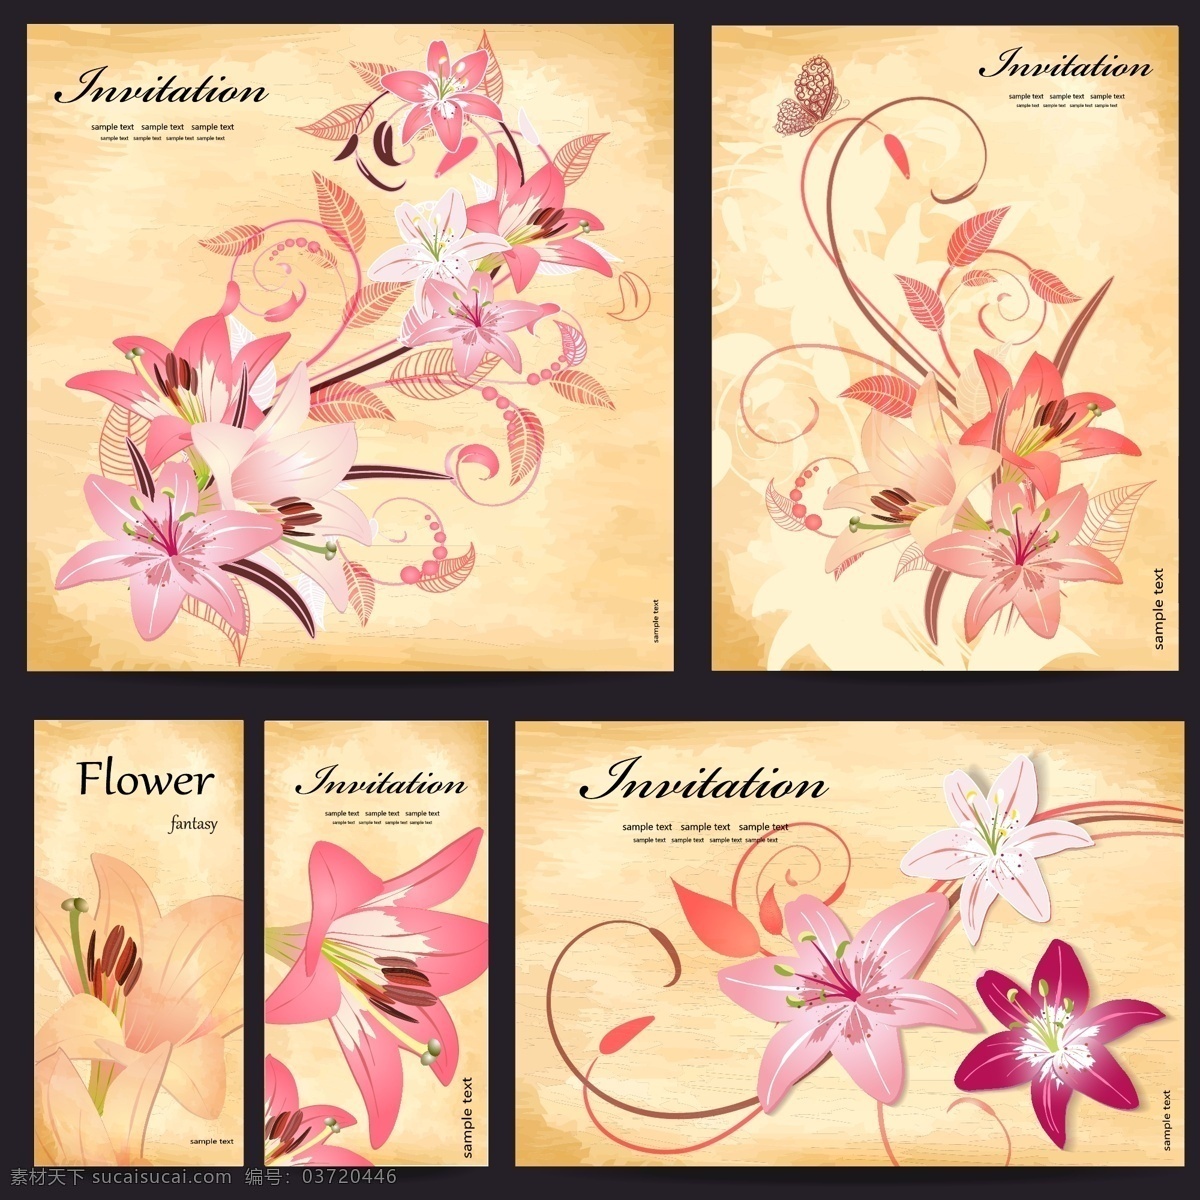 百合 花卉 卡片 矢量 设计素材 寓意 吉祥 矢量素材 装饰图案 设计元素